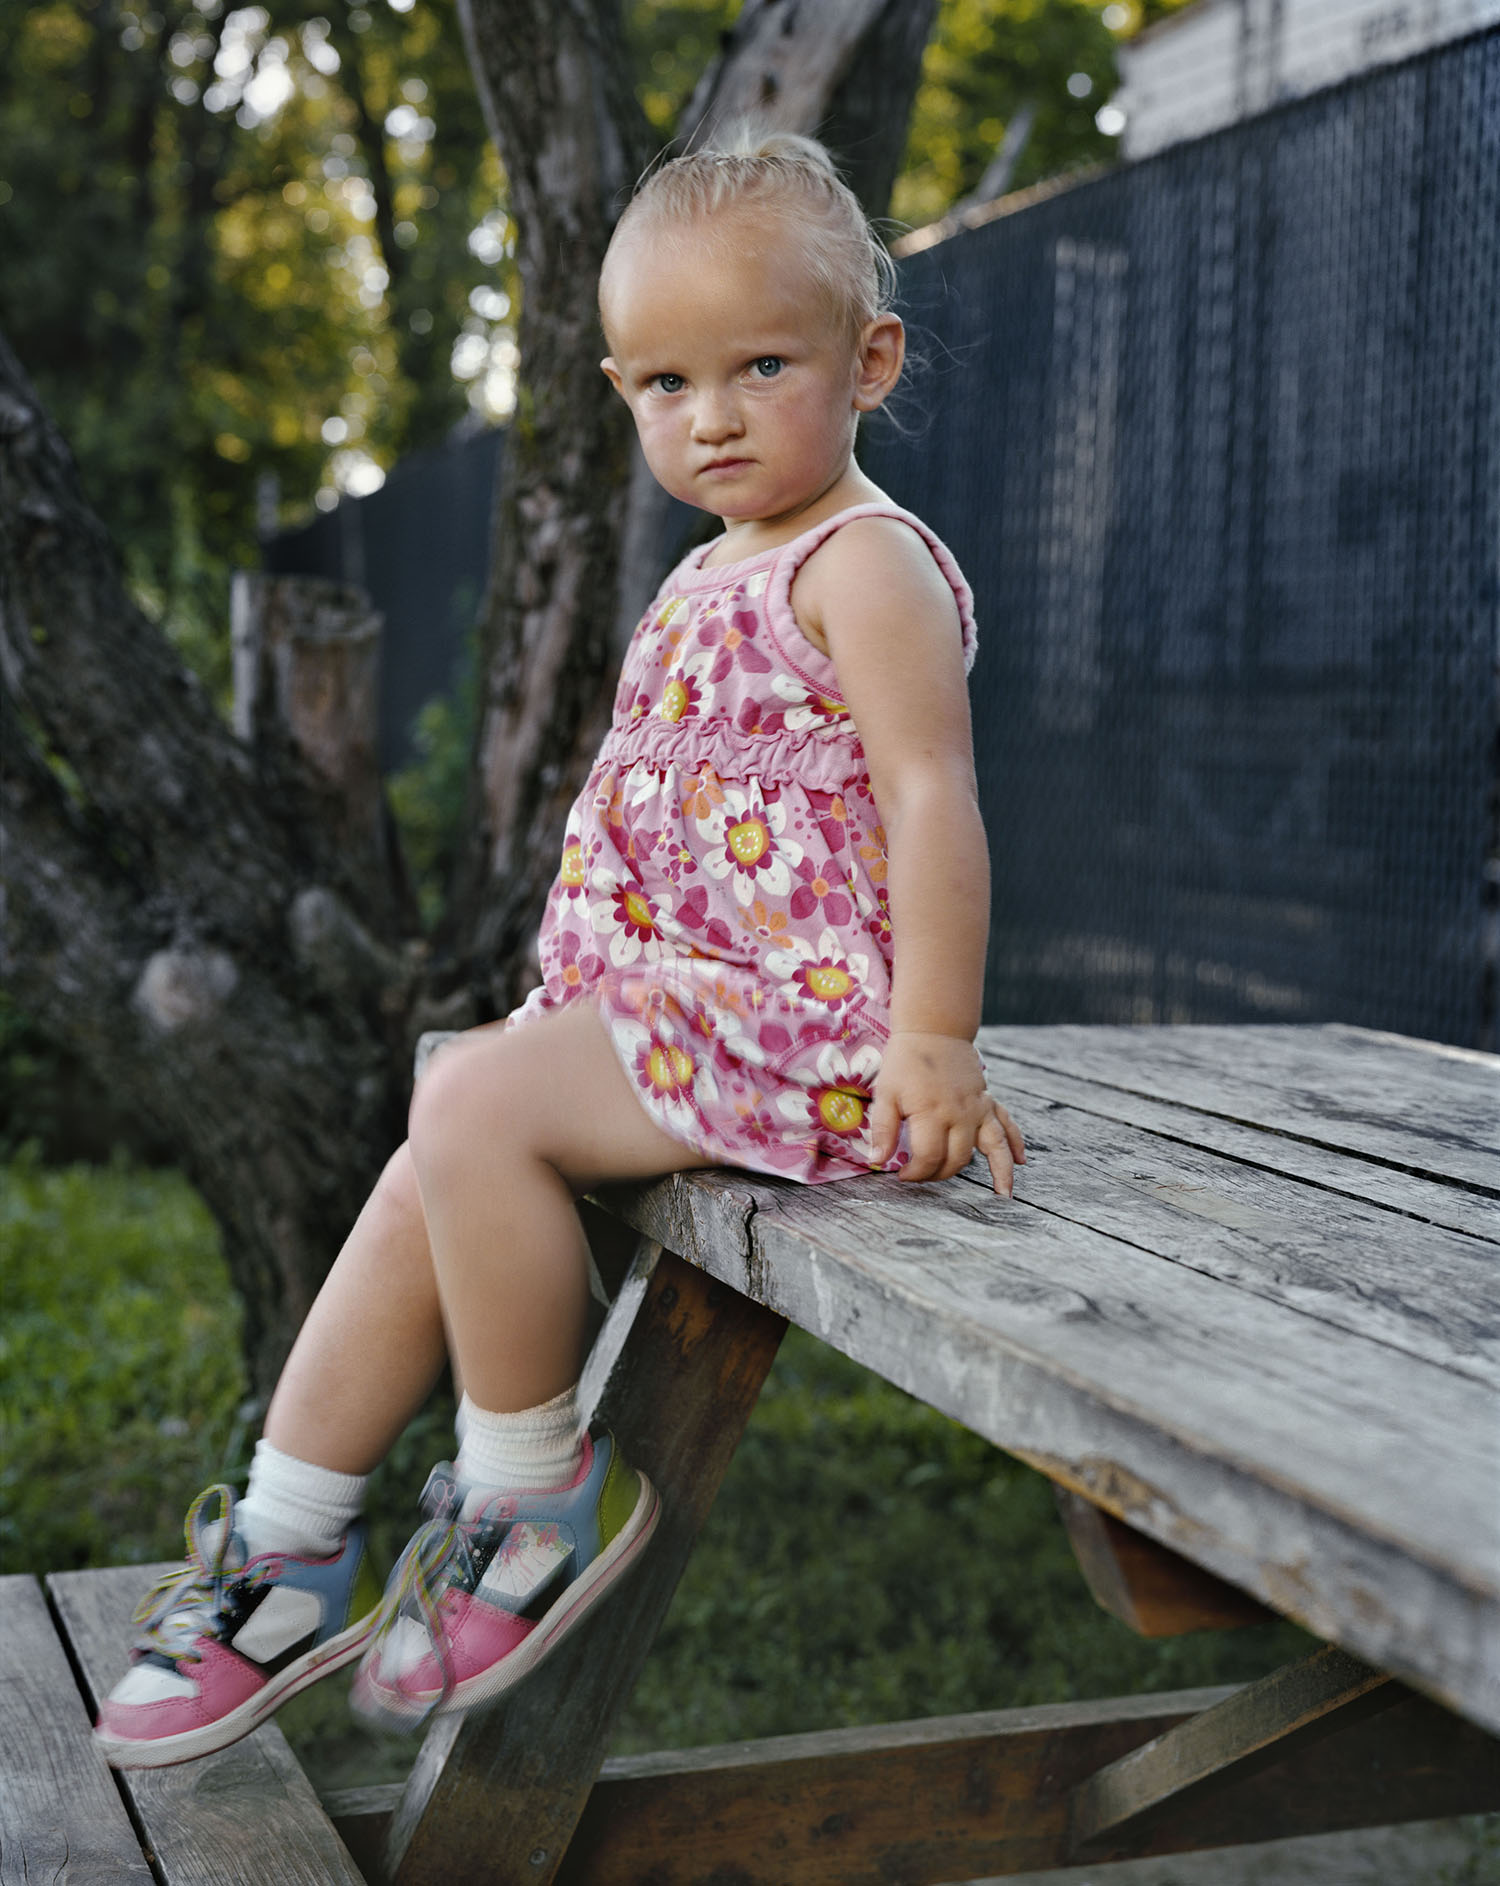 Hanna-Beth Lozier, daughter of Elizabeth Lozier, 2013